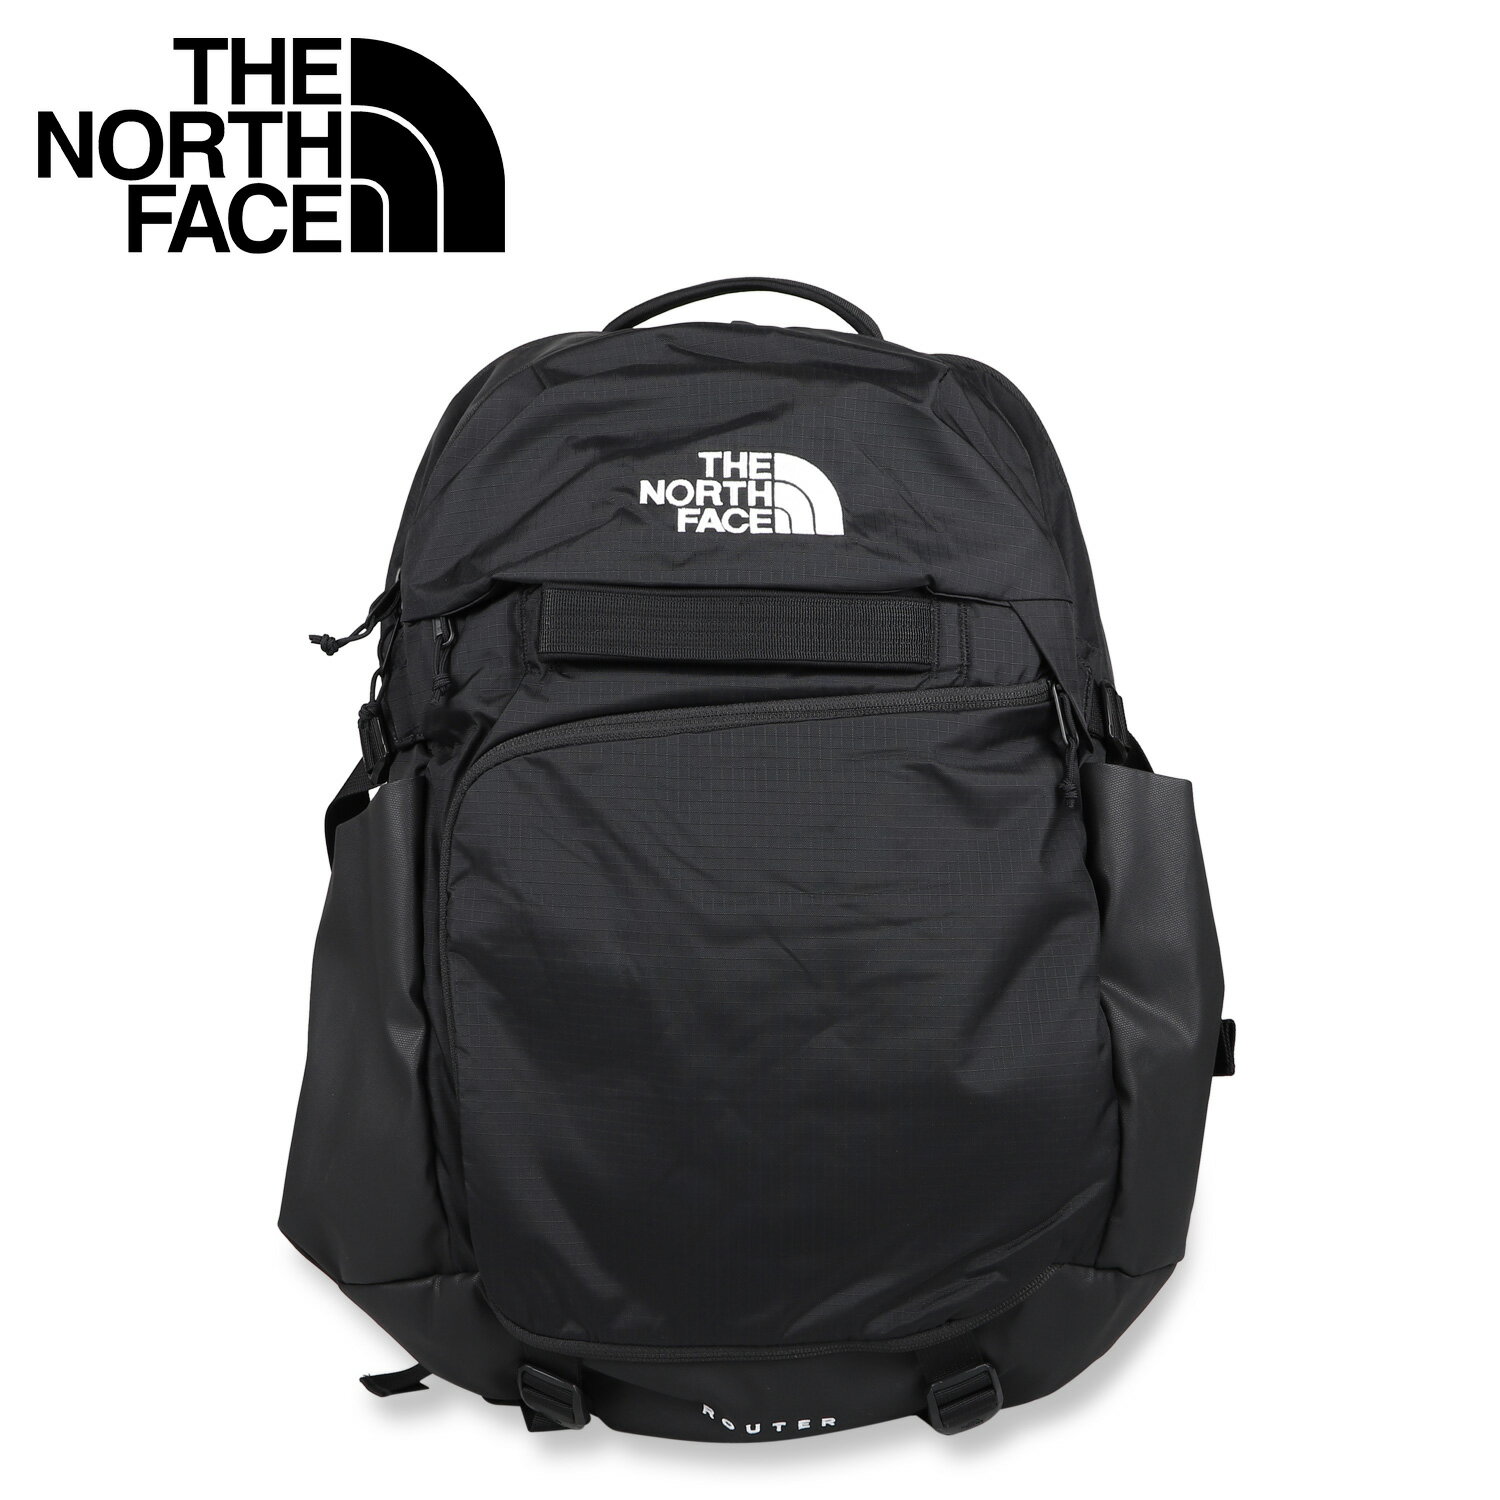 THE NORTH FACE ノースフェイス リュック バッグ バックパック メンズ レディース ボレアリス 大容量 40L BOREALIS ブラック 黒 NF0A52SF